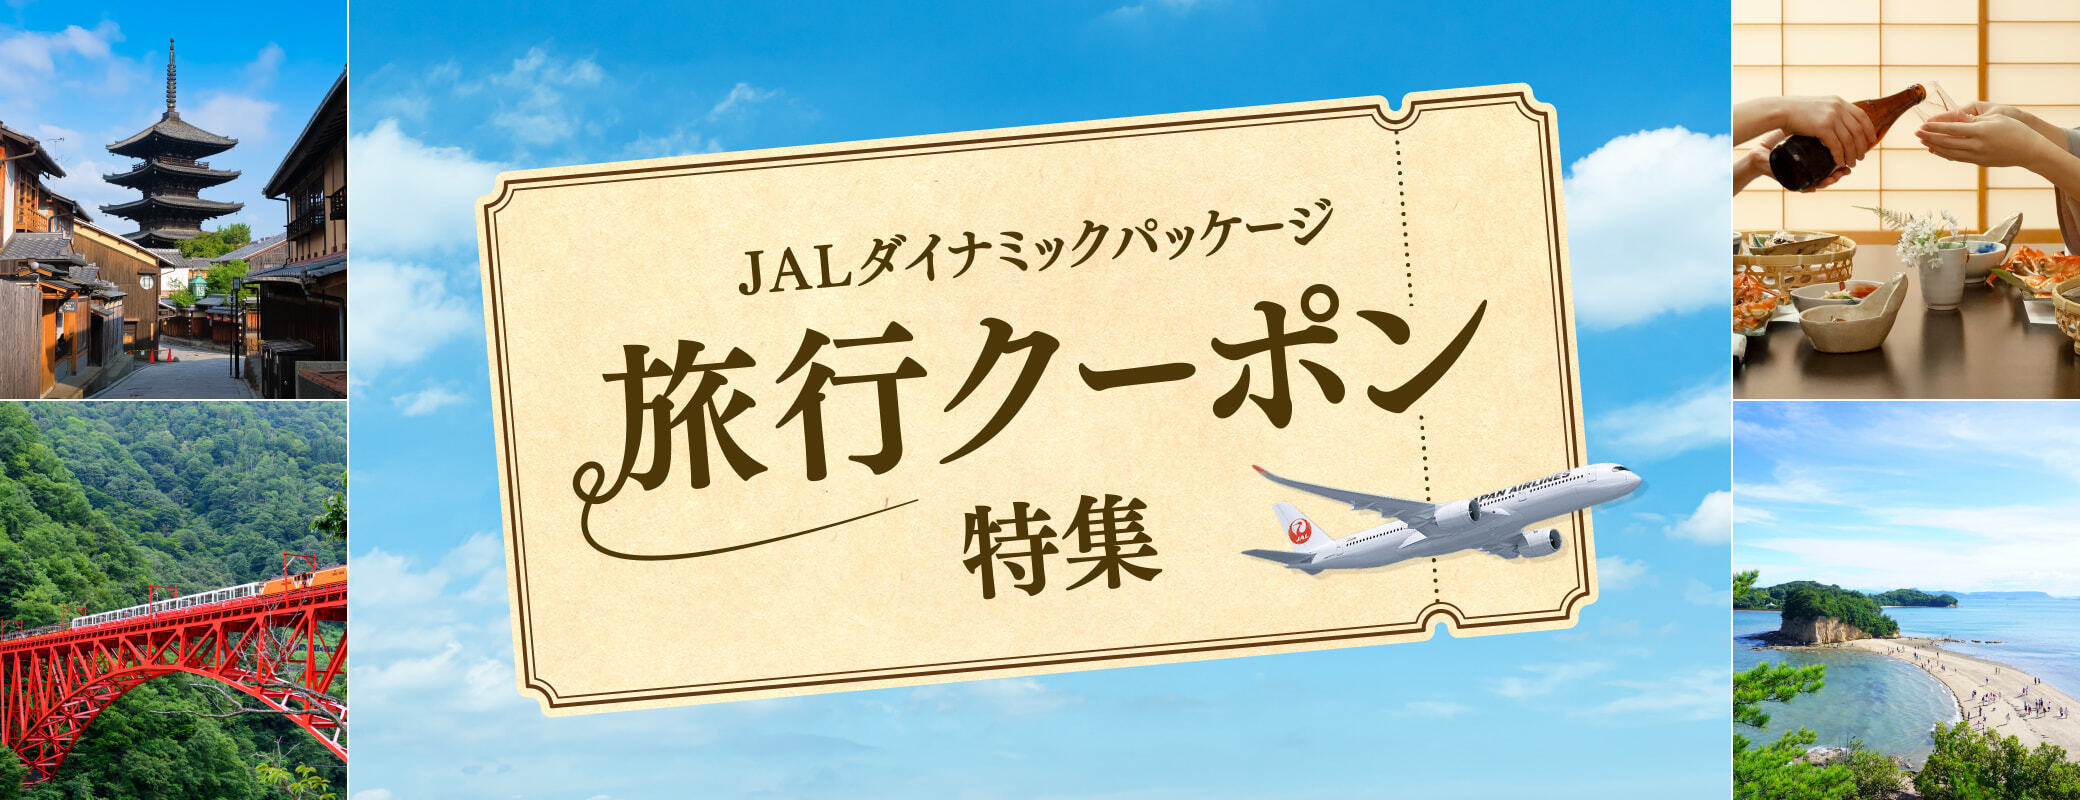 JALダイナミックパッケージ旅行クーポン特集